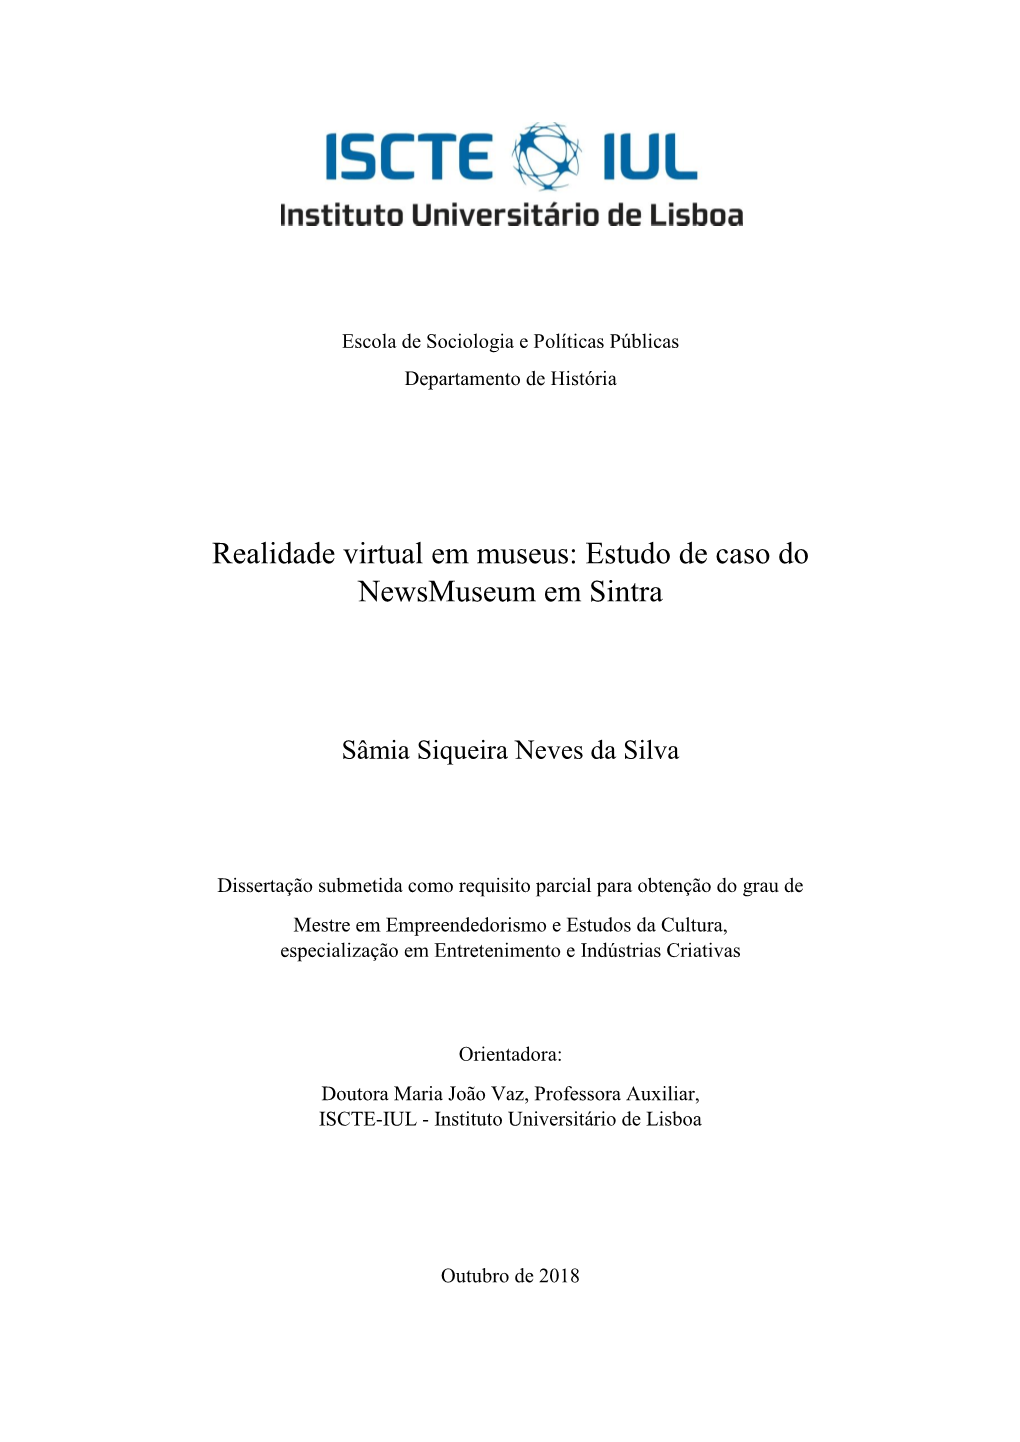 Realidade Virtual Em Museus: Estudo De Caso Do Newsmuseum Em Sintra